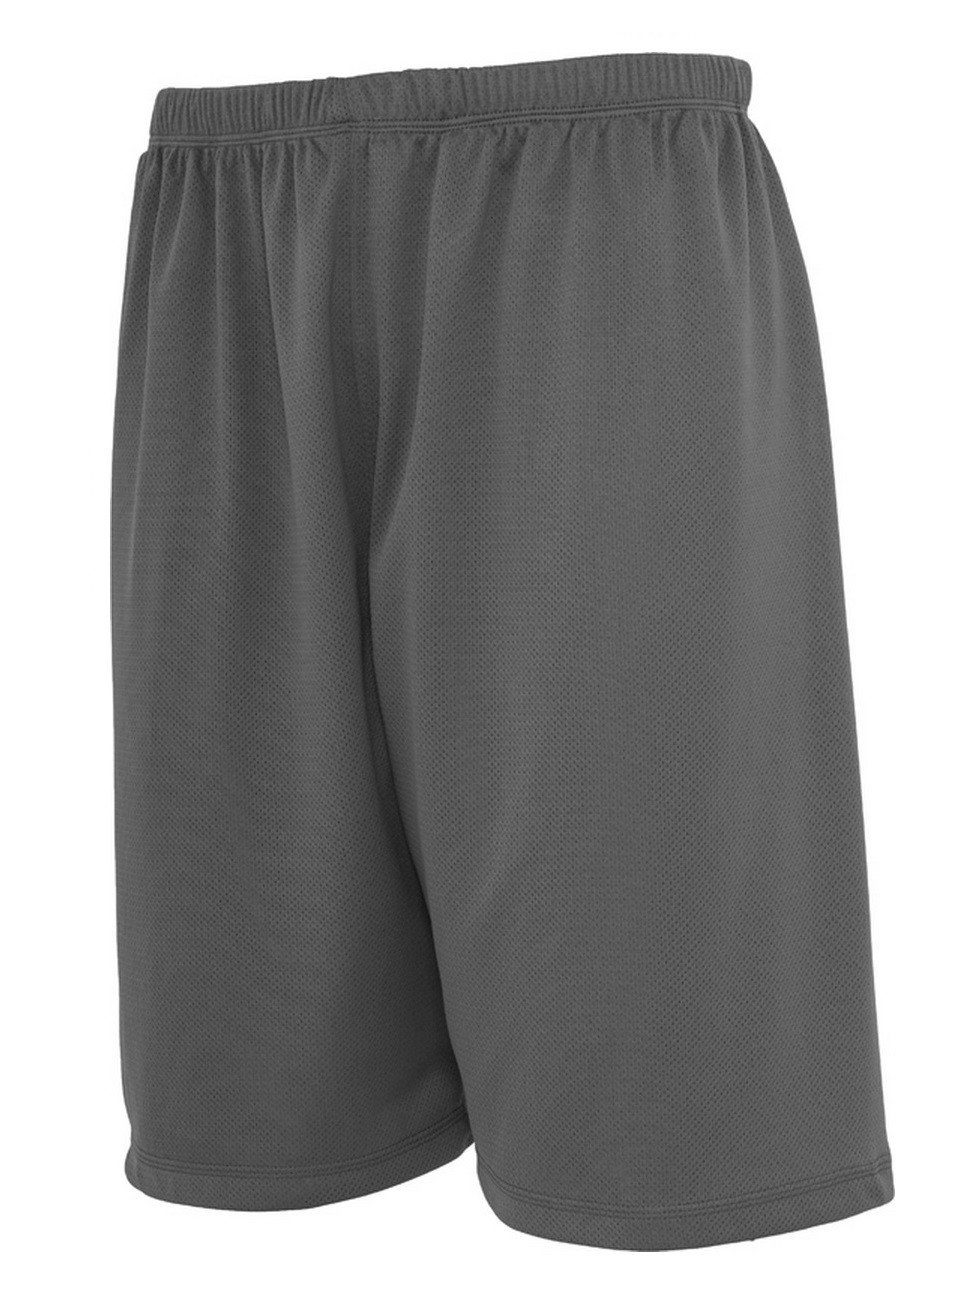 URBAN CLASSICS Shorts Bball Mesh mit Shorts Grey Mesheinlage (00111)